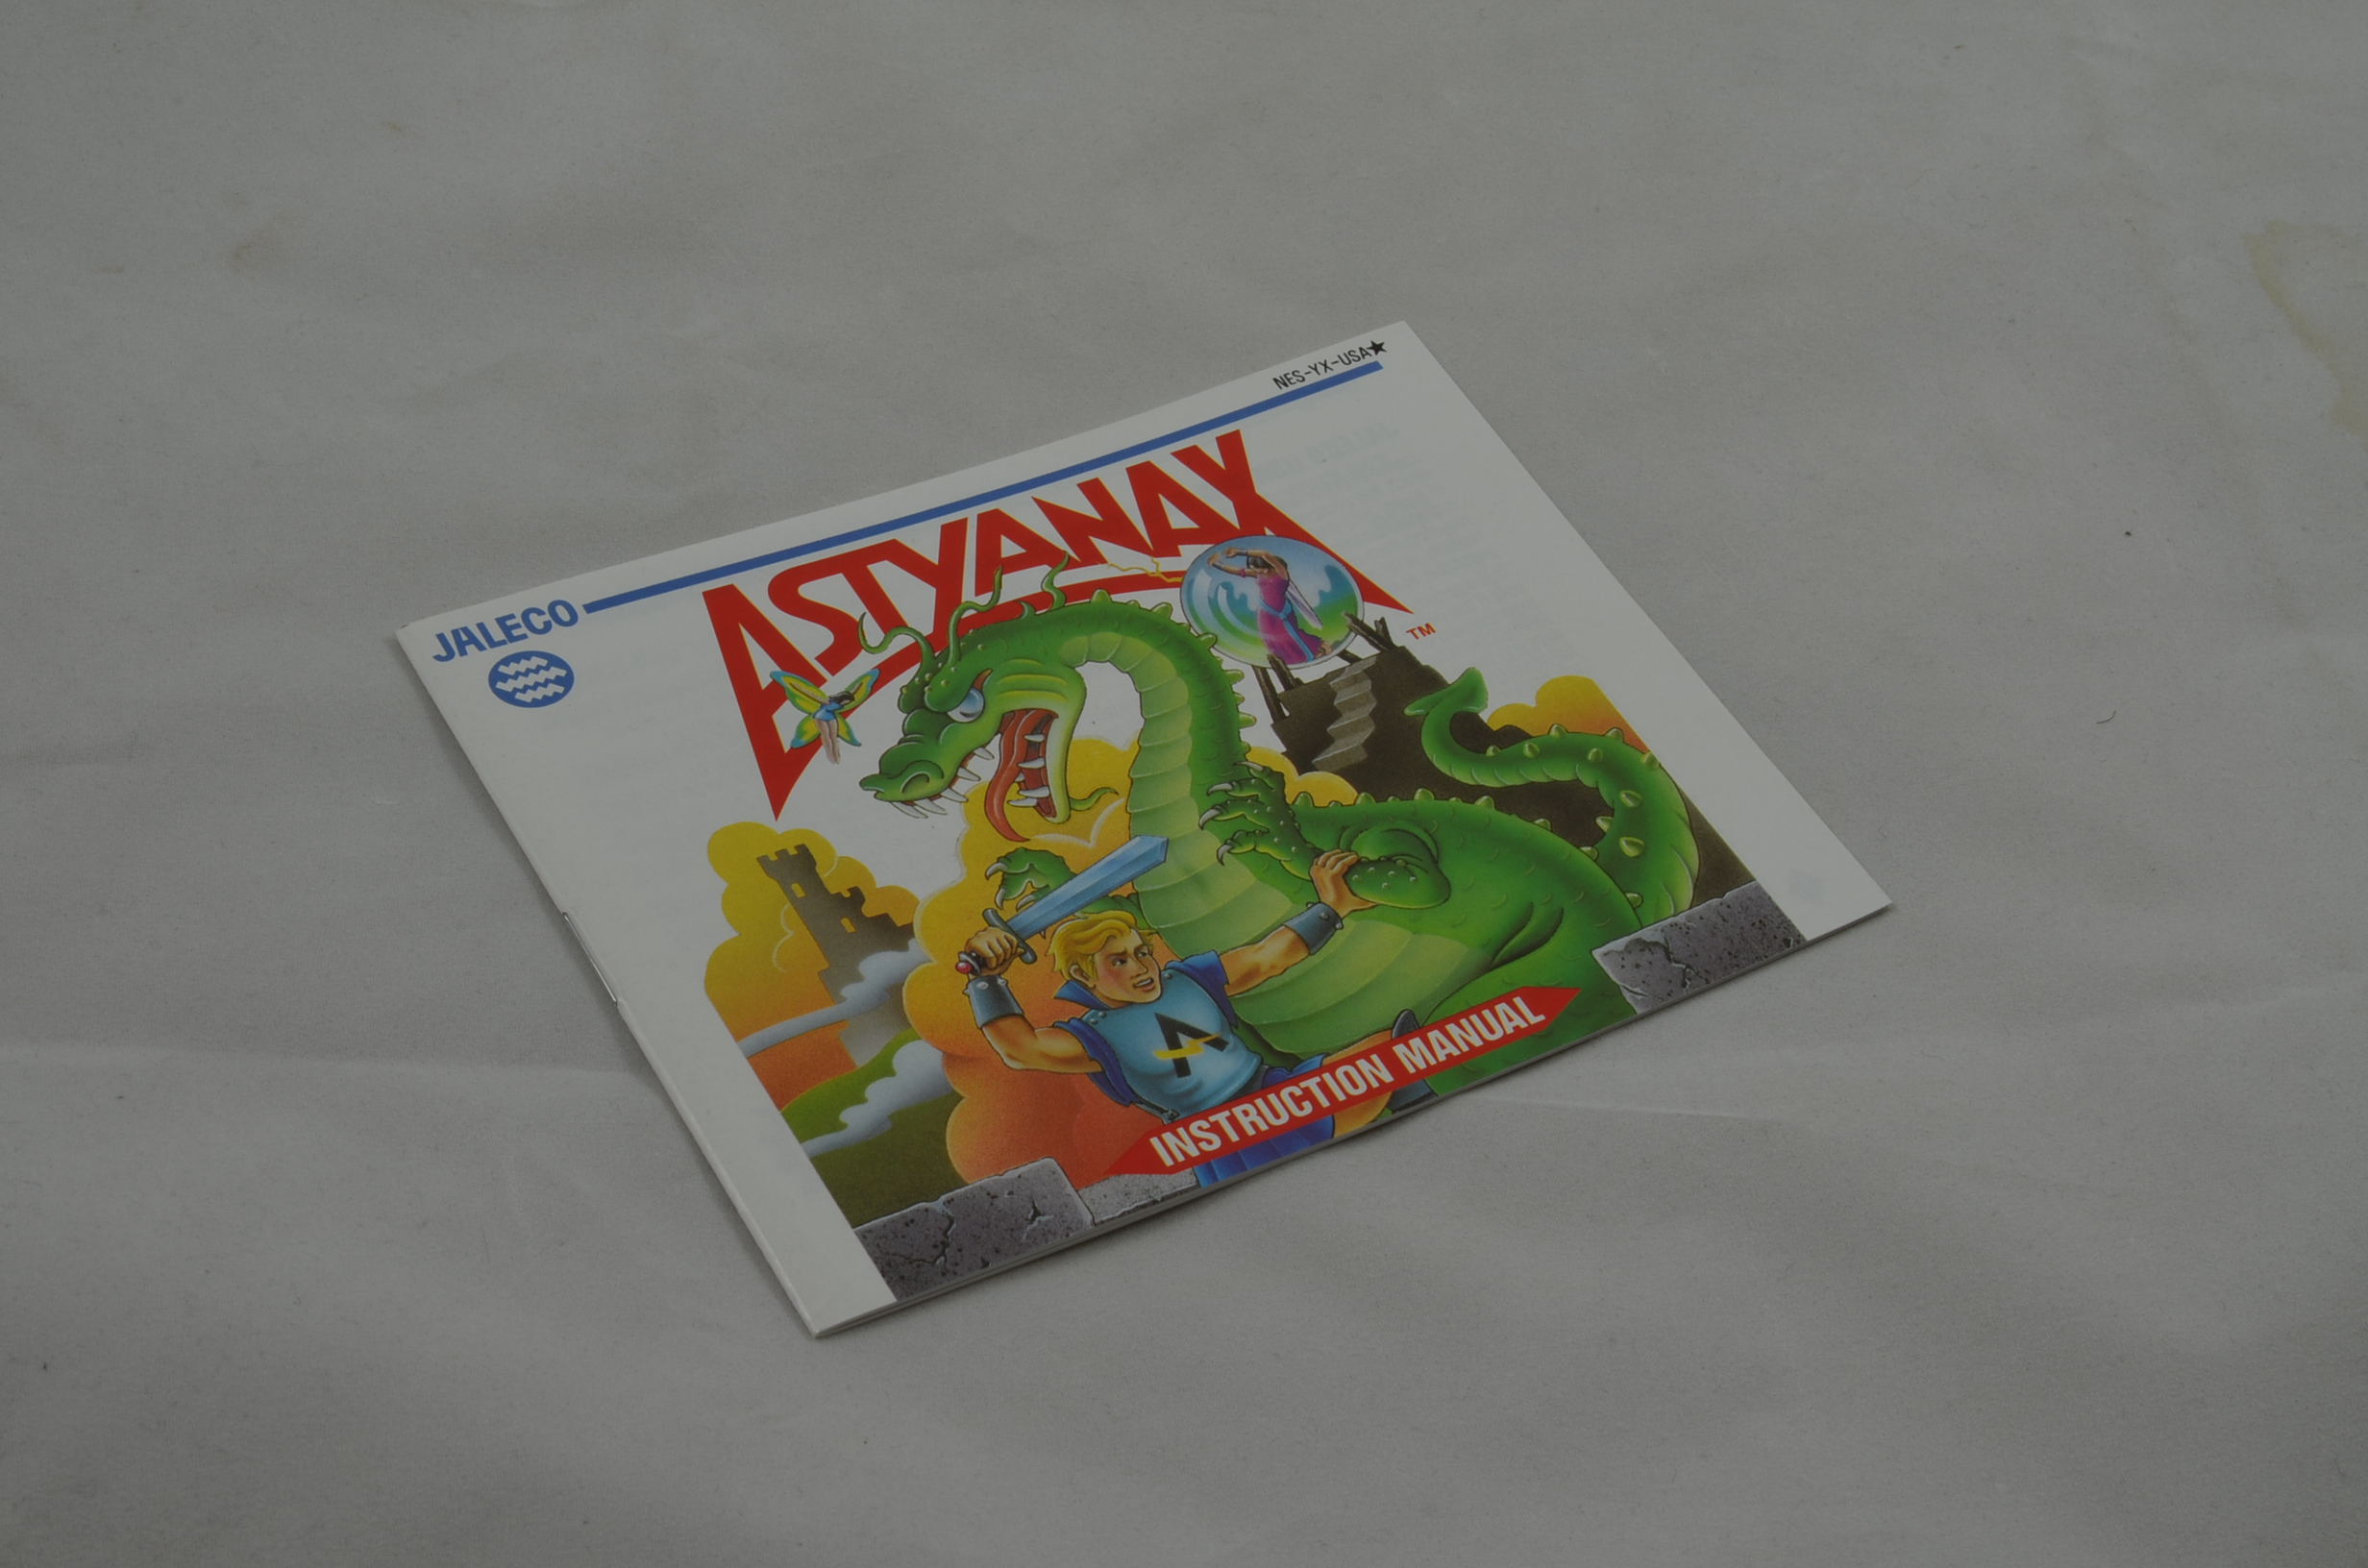 Produktbild von Astyanax NES Anleitung